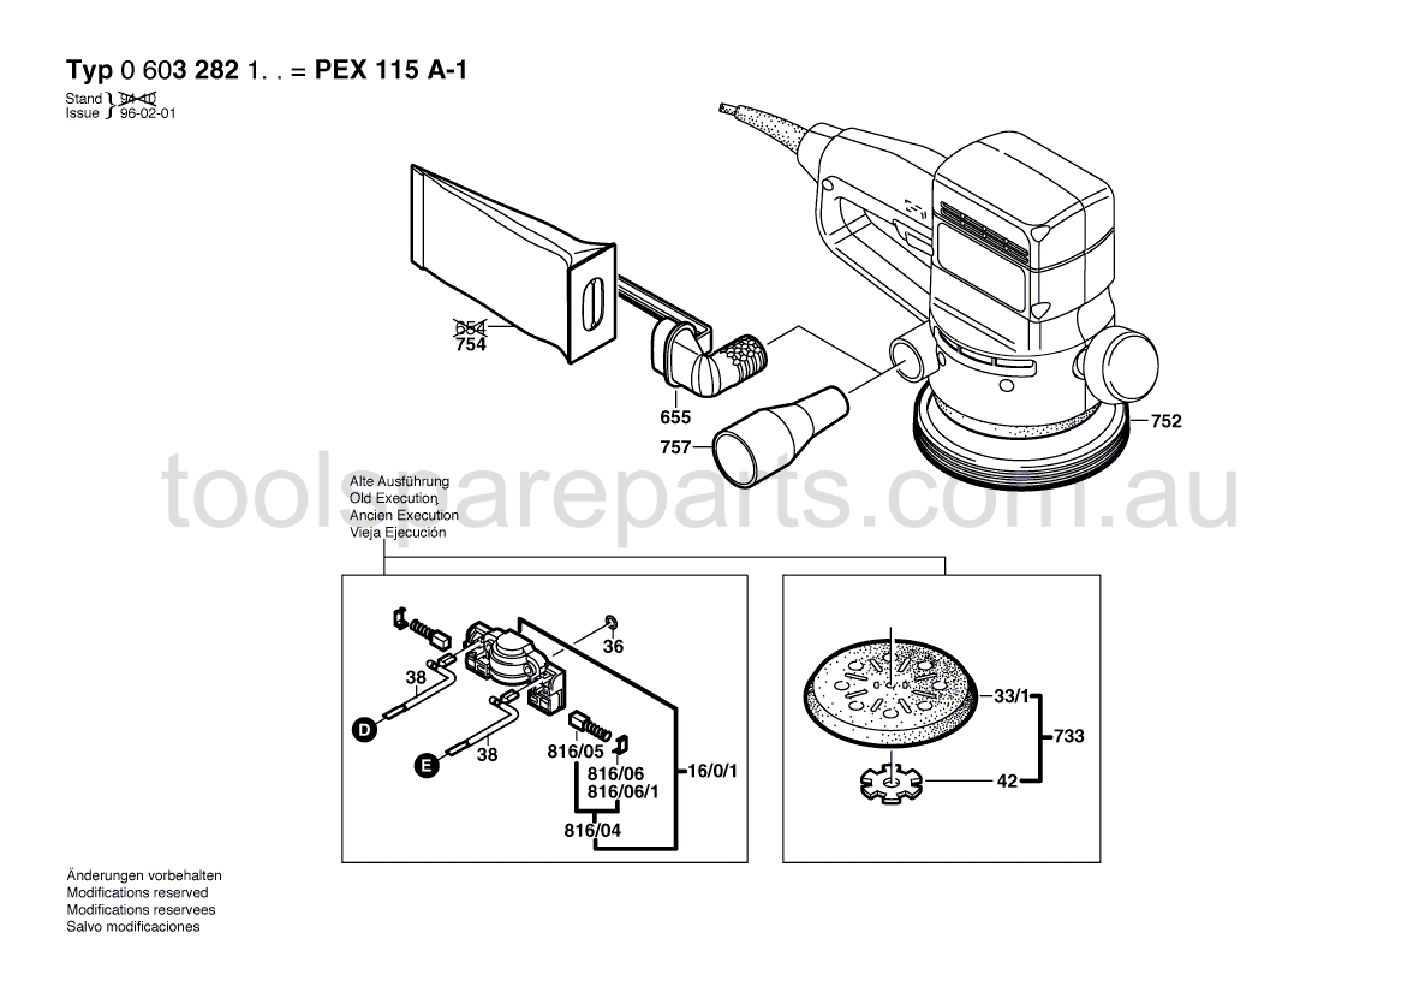 Bosch PEX 115 A-1 0603282137  Diagram 2